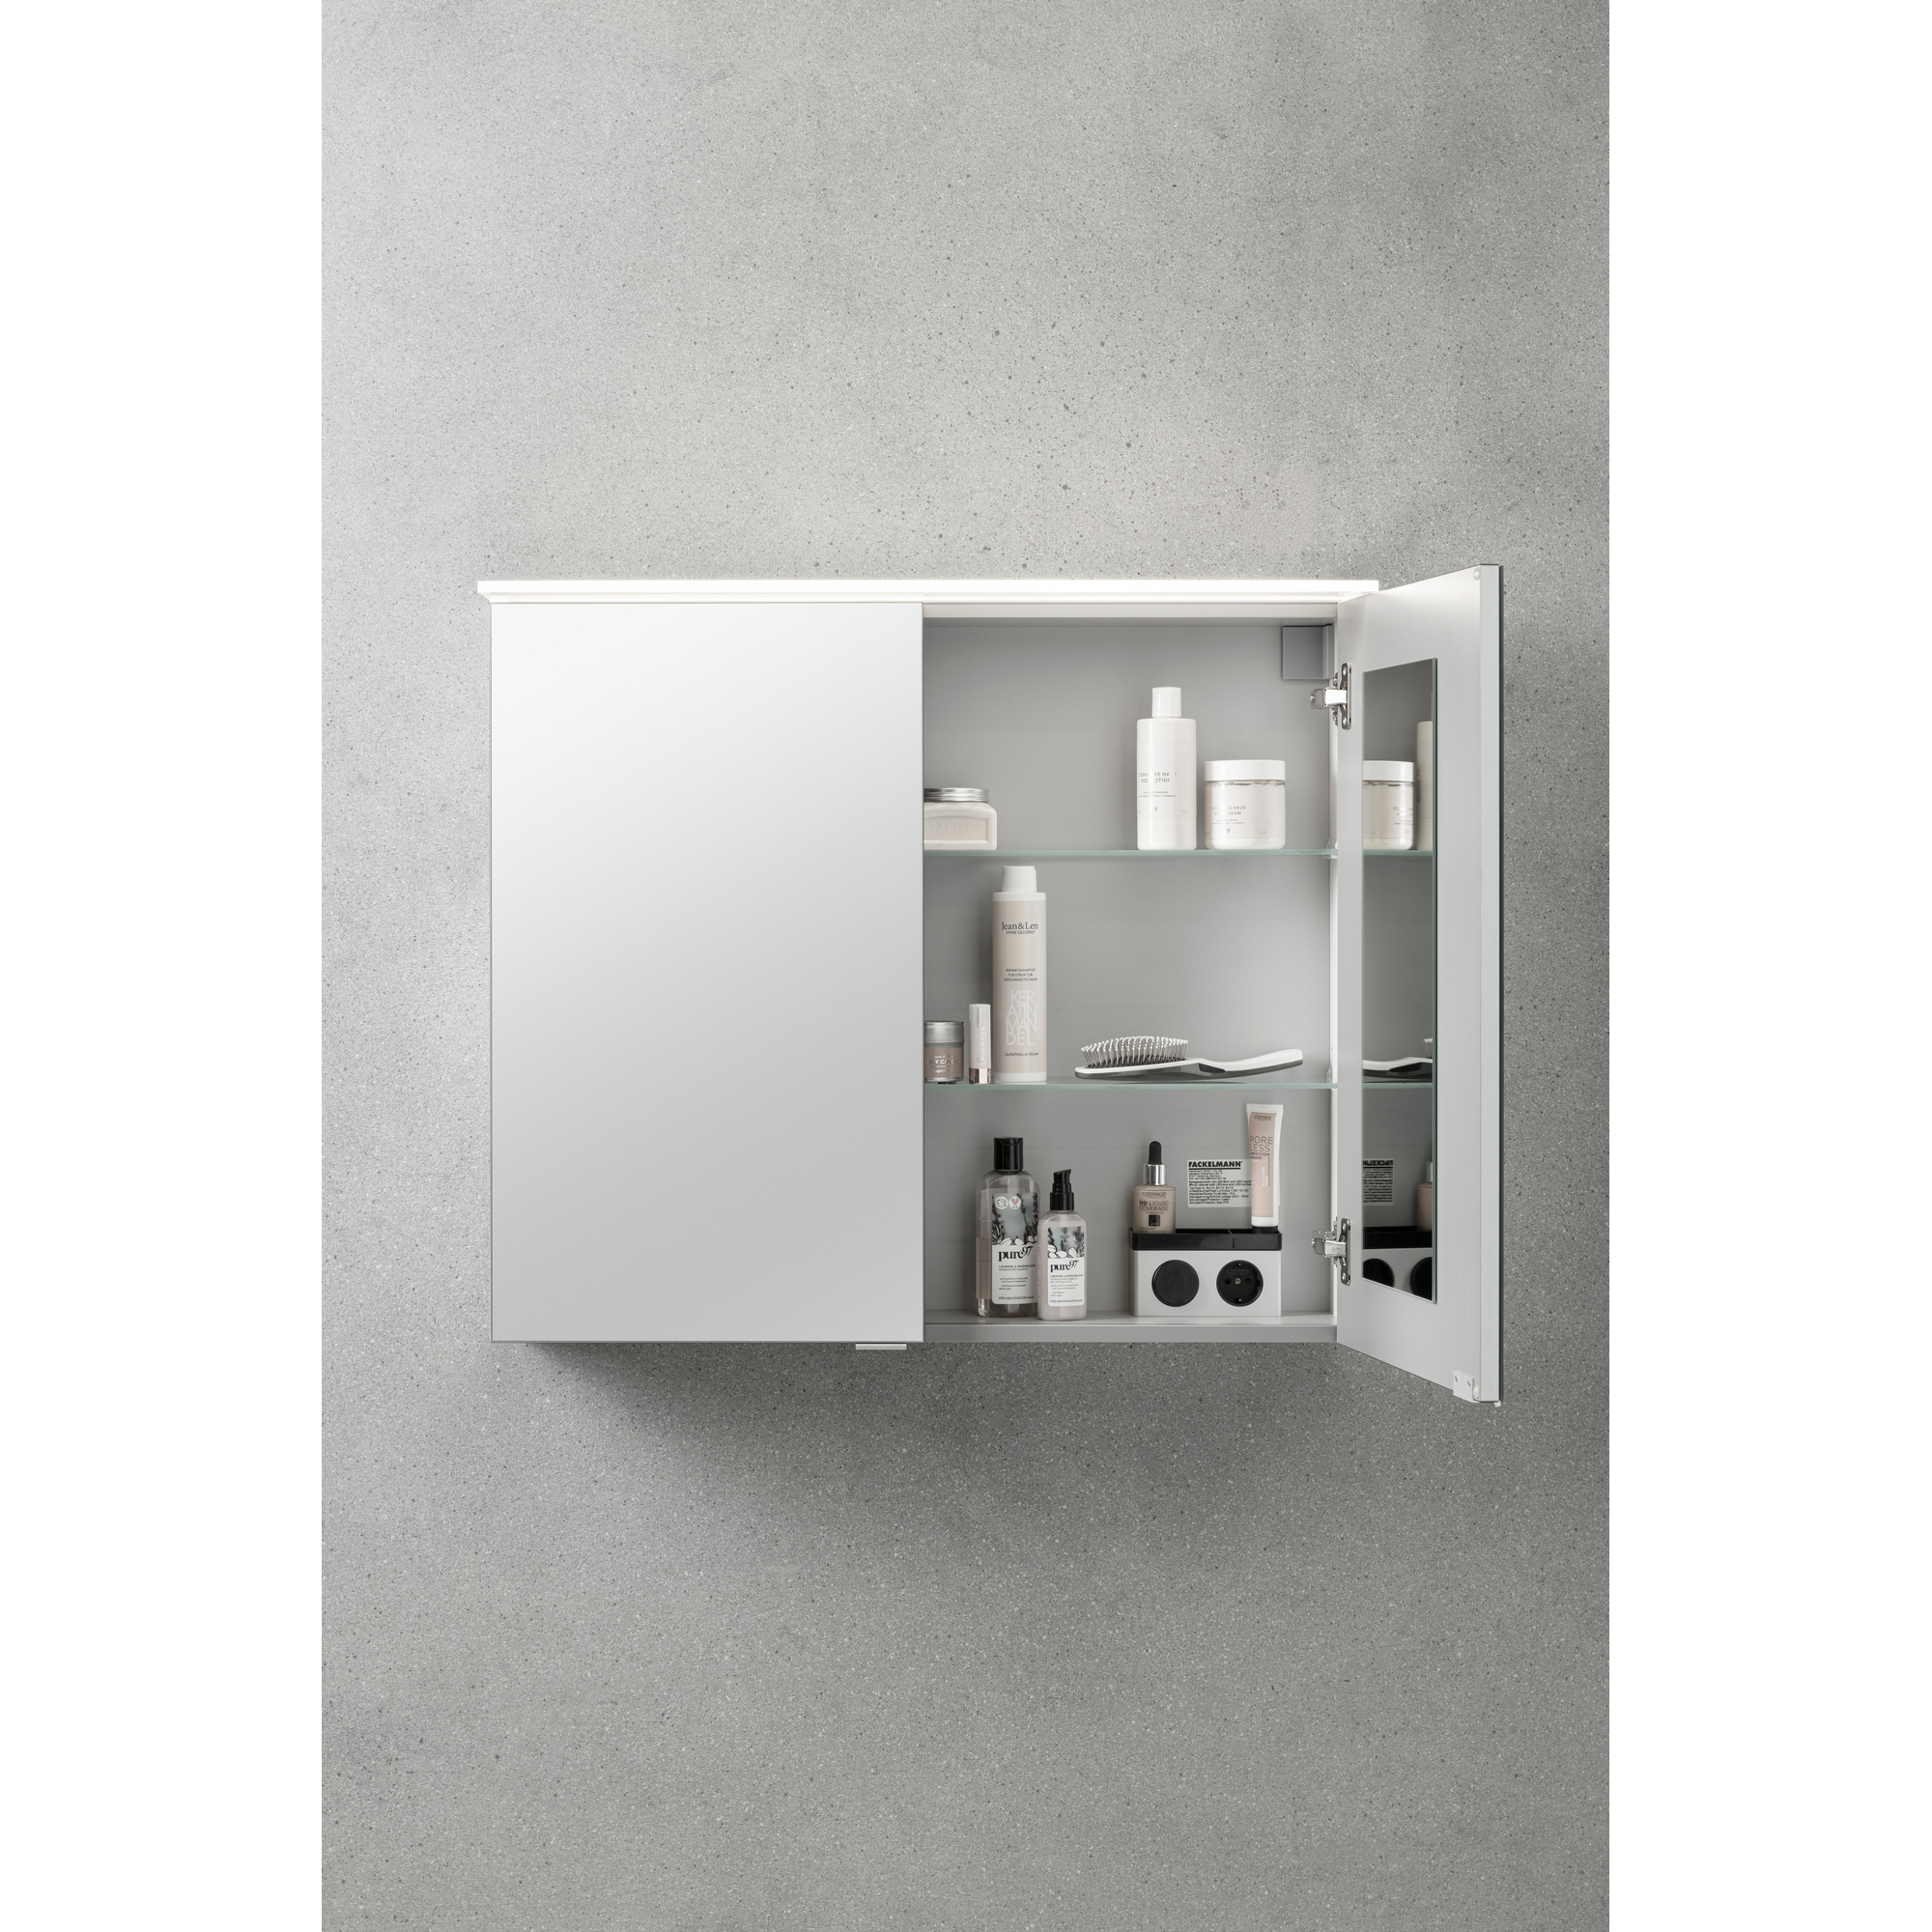 LED-Spiegelschrank 'B.Perfekt' weiß 80 x 69,4 x 15,2 cm + product picture